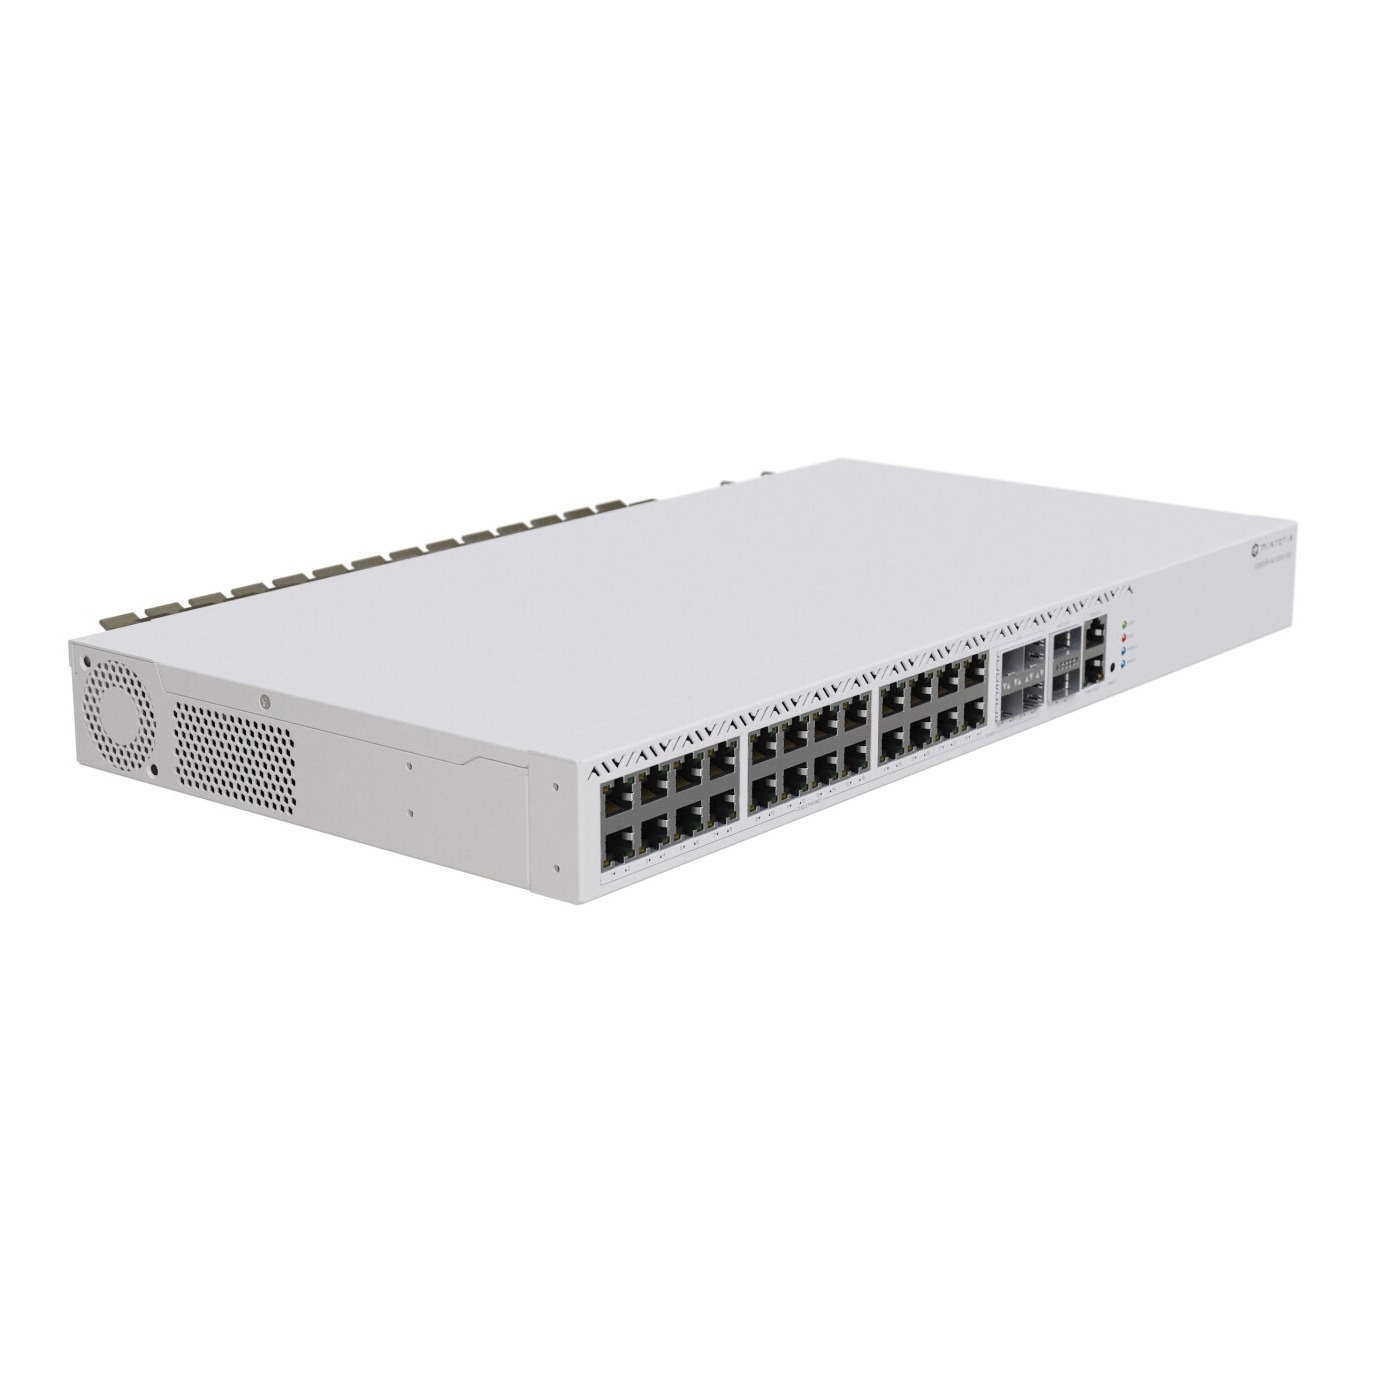 MikroTik CRS326 2.5 Gigabit 24 Port Cloud Router Switch